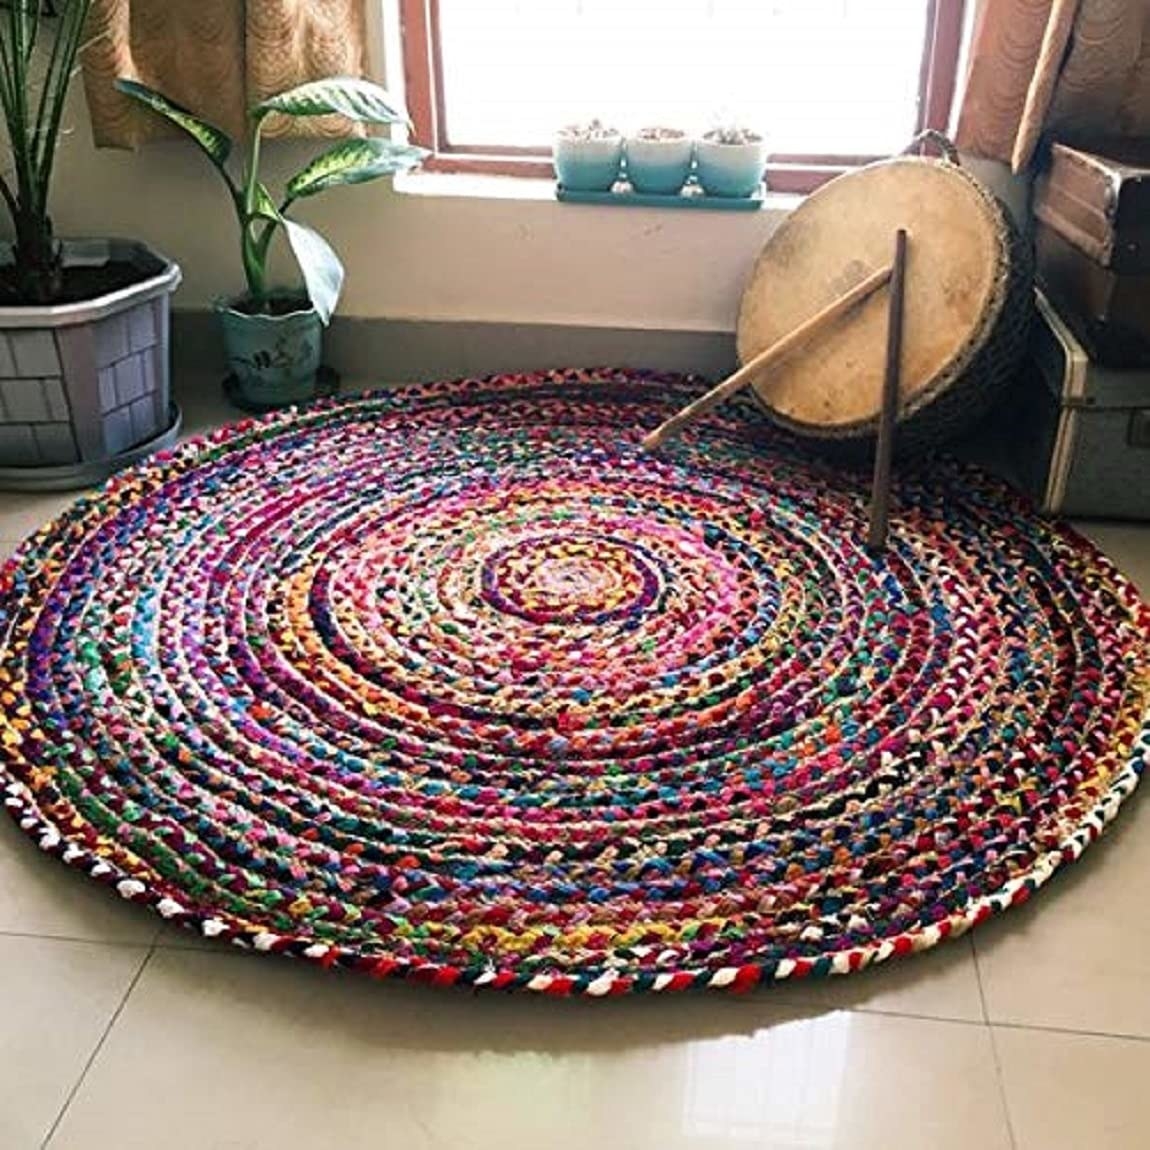 A rug on the floor